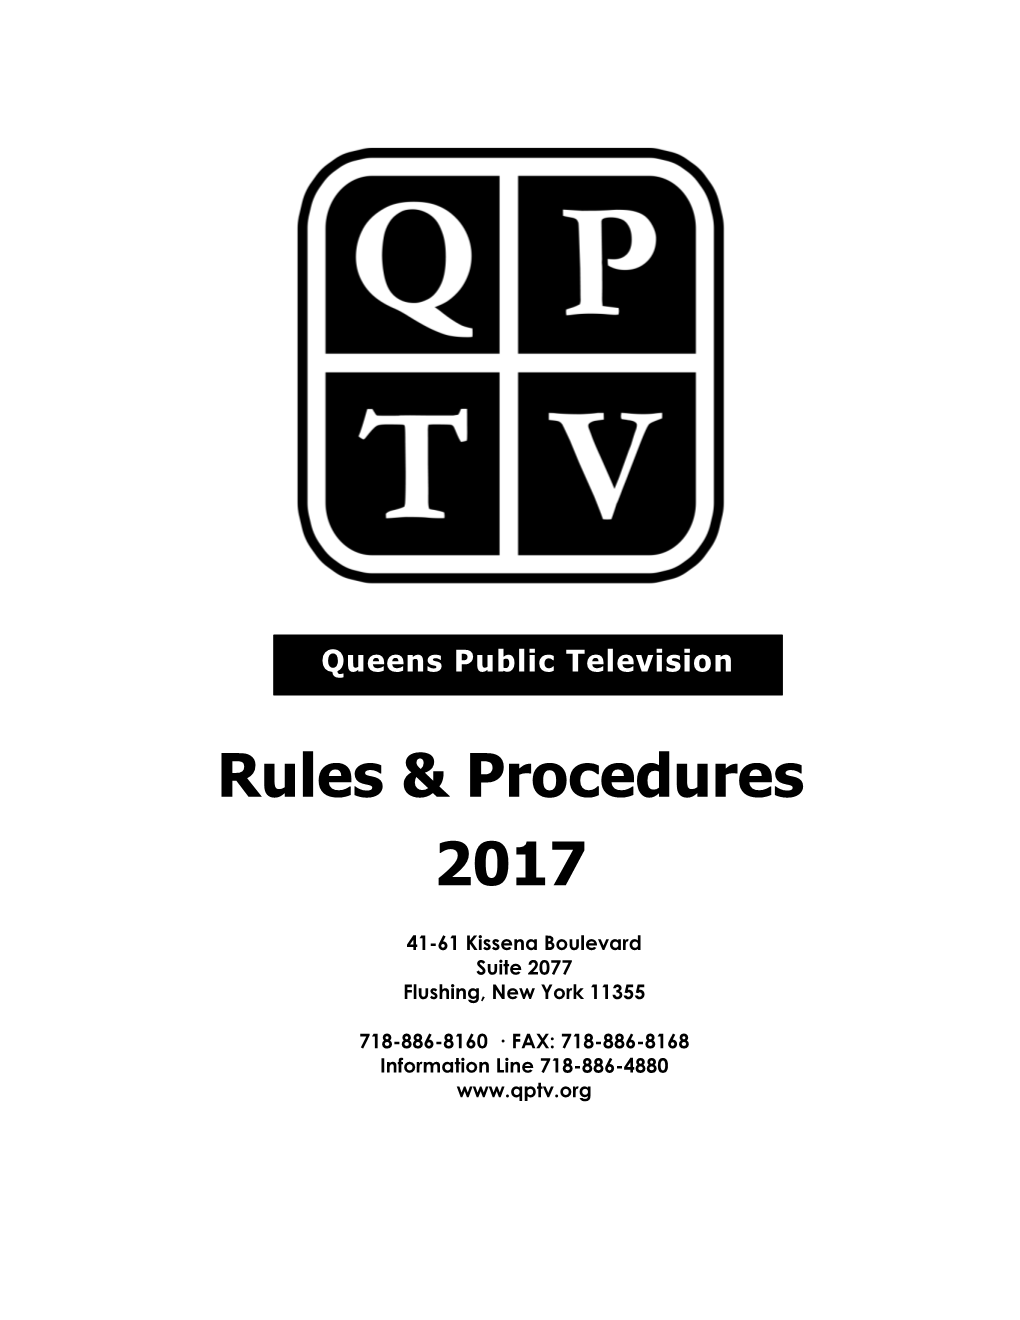 Rules & Procedures 2017